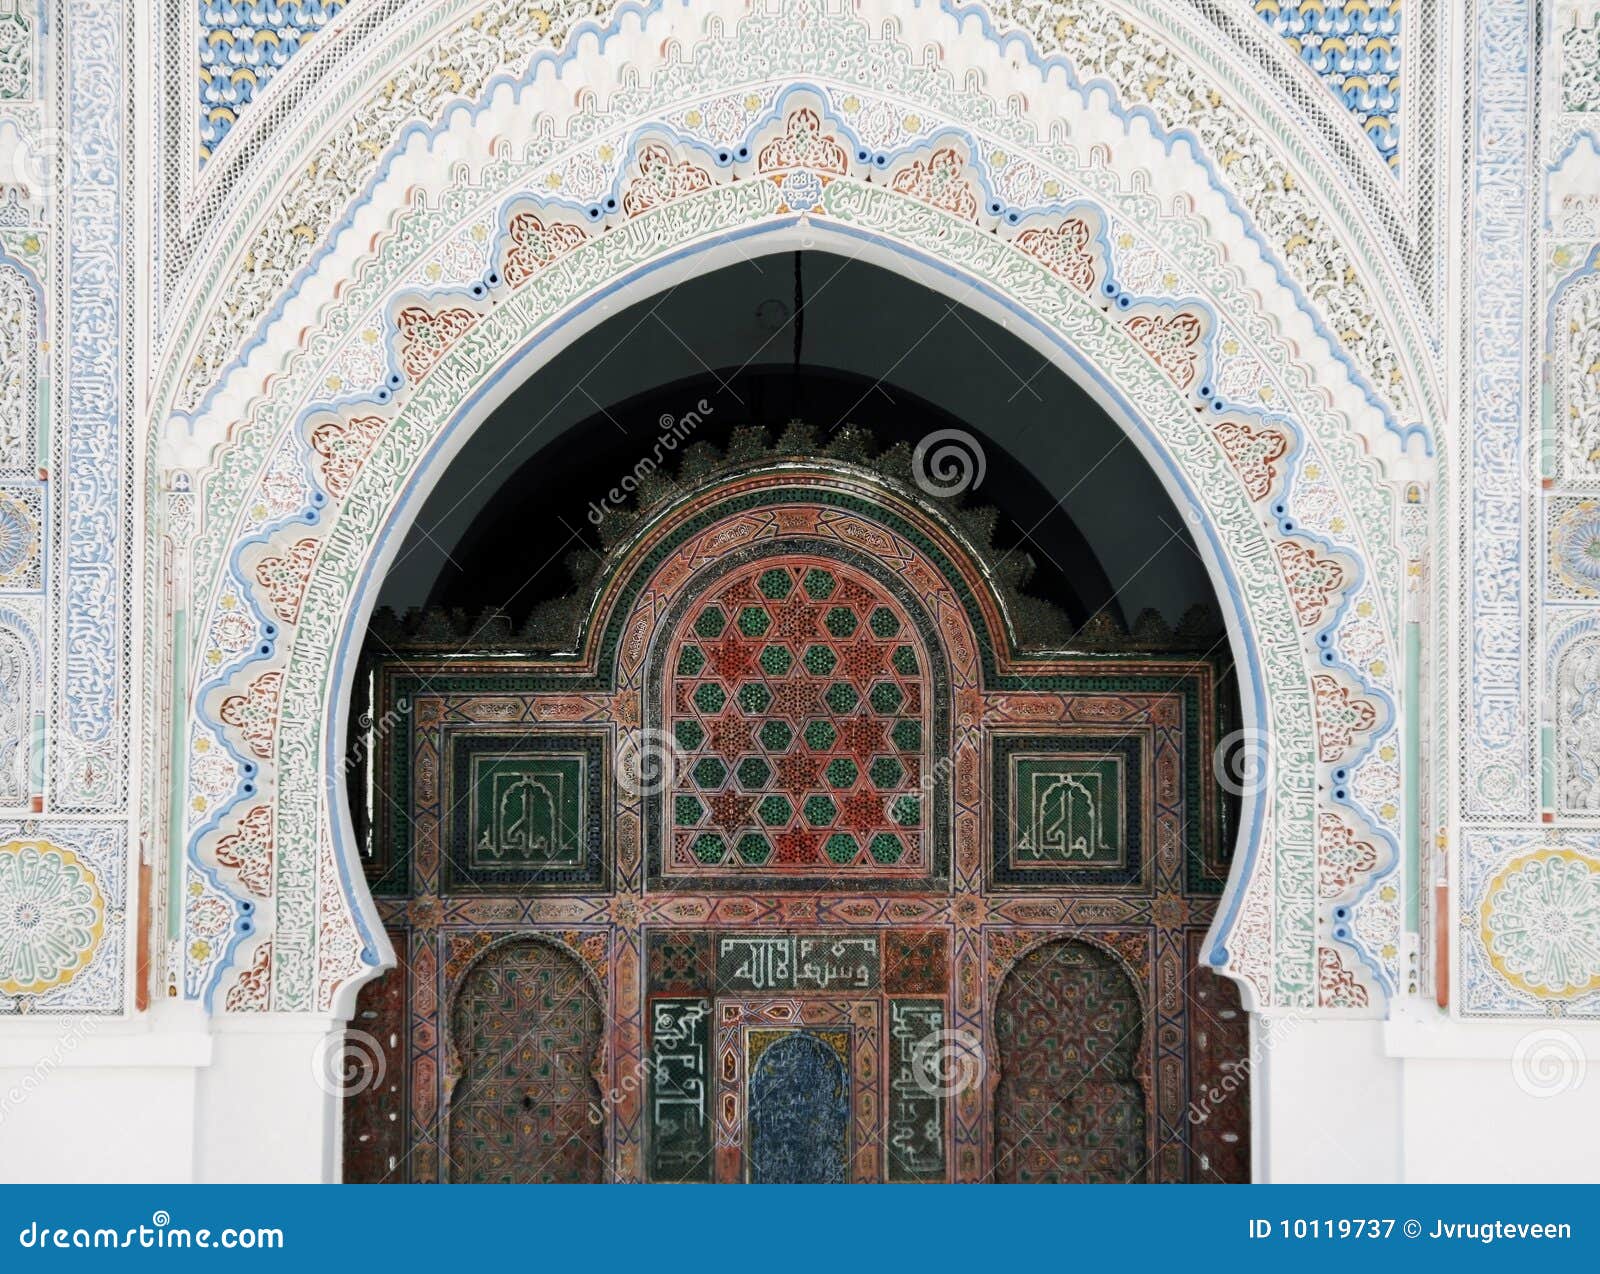 kairaouine quaraouiyne mosque in fez, morocco